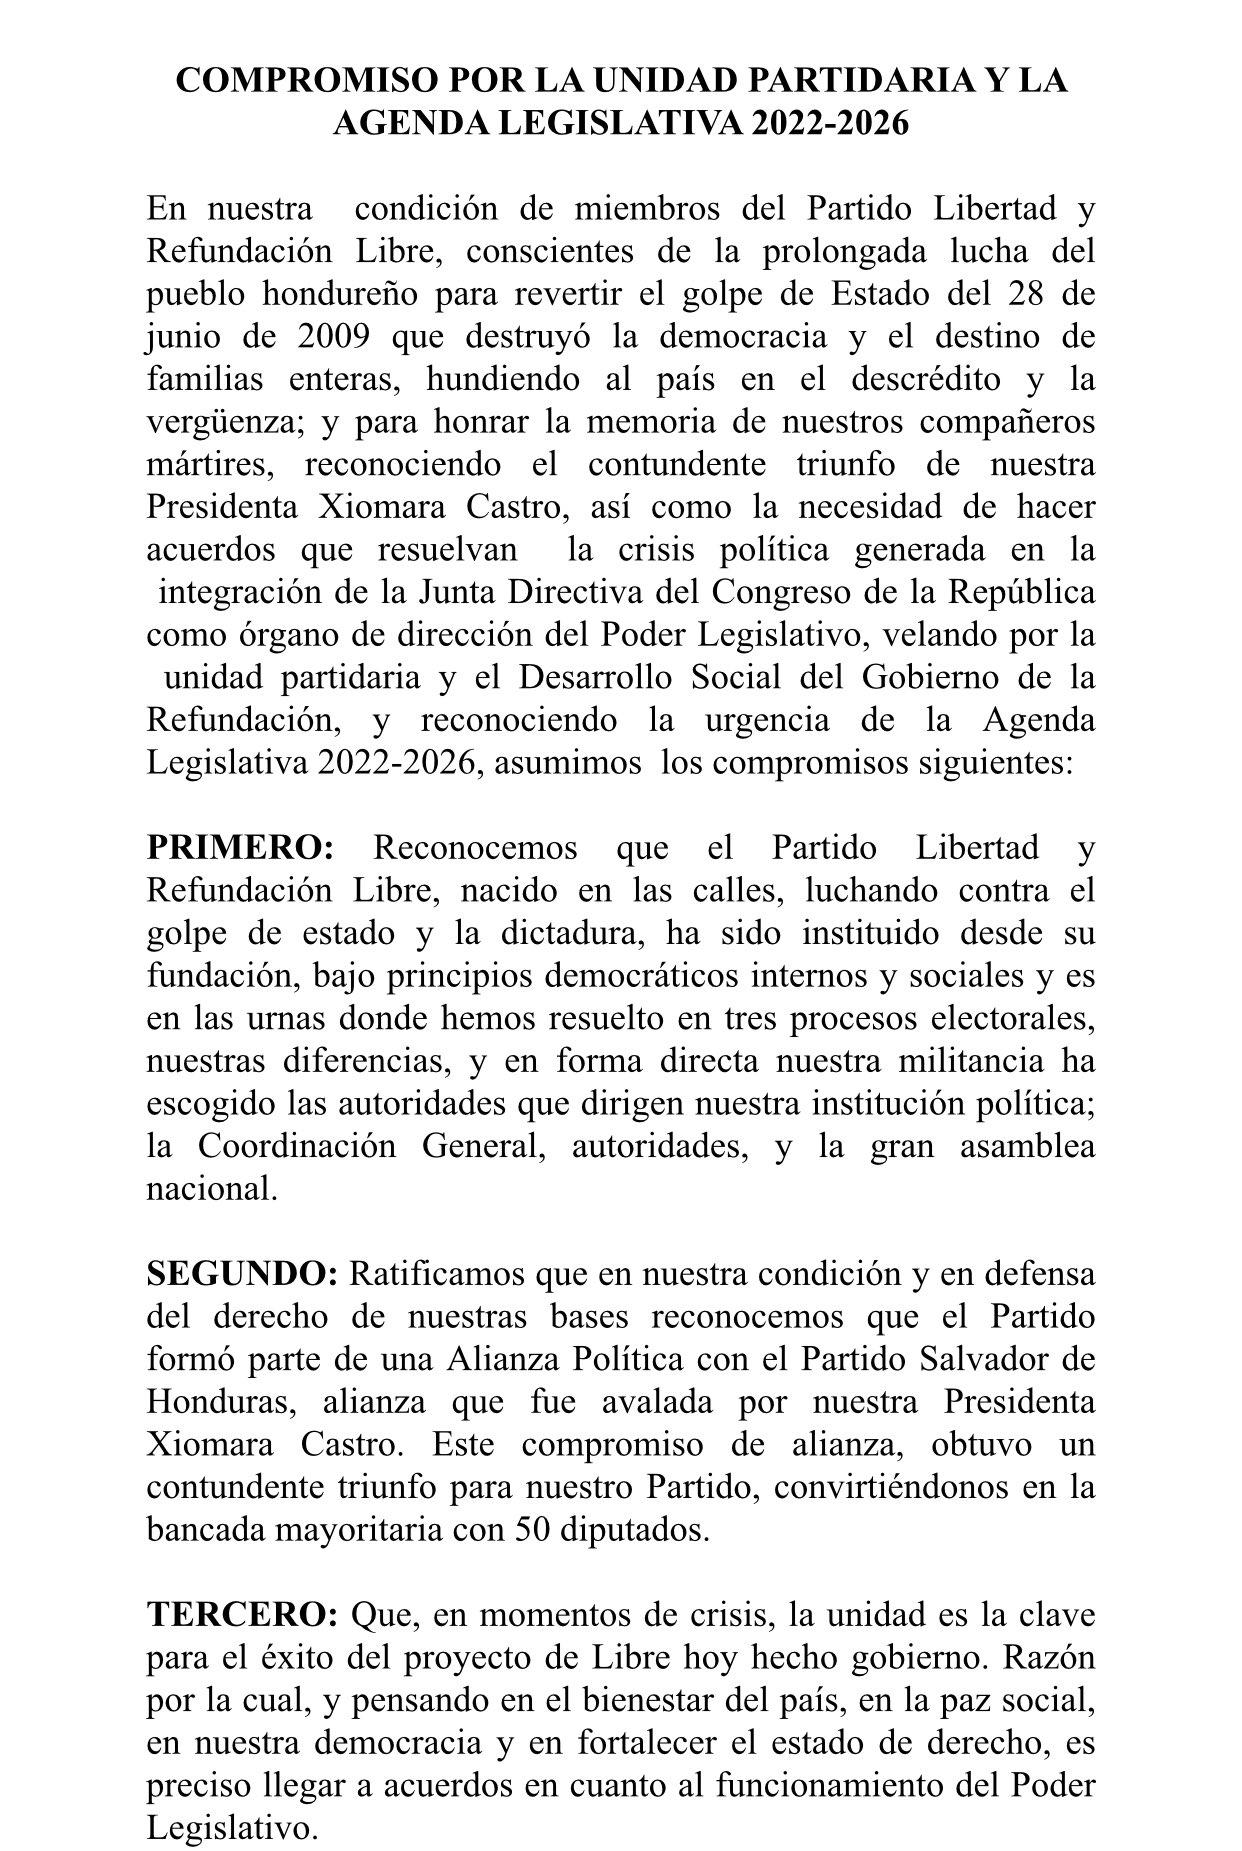 Jorge Cálix da un paso al costado y firma acuerdo para que Luis Redondo continúe como único presidente del Congreso Nacional